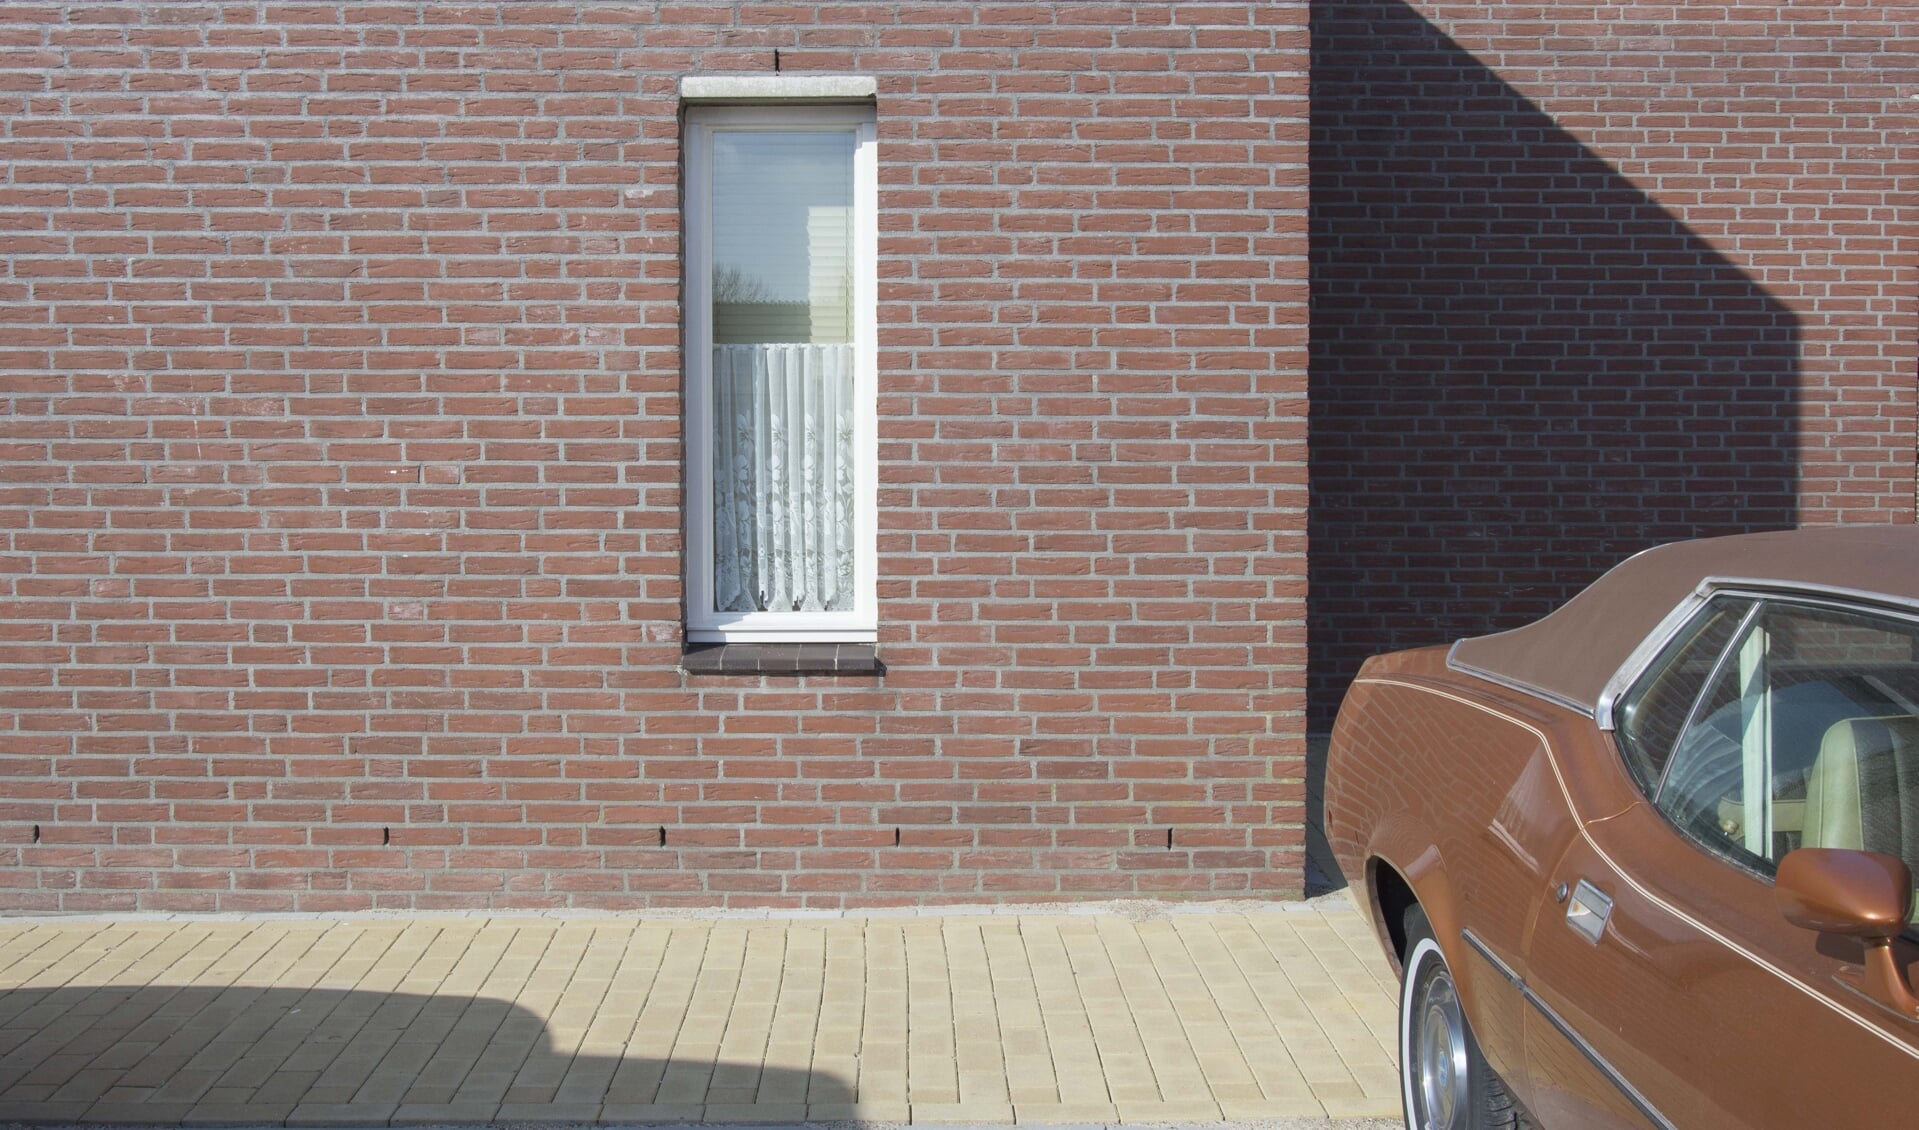 Kristel's werk bestaat uit details van huizen en straten in typisch Nederlandse wijken.